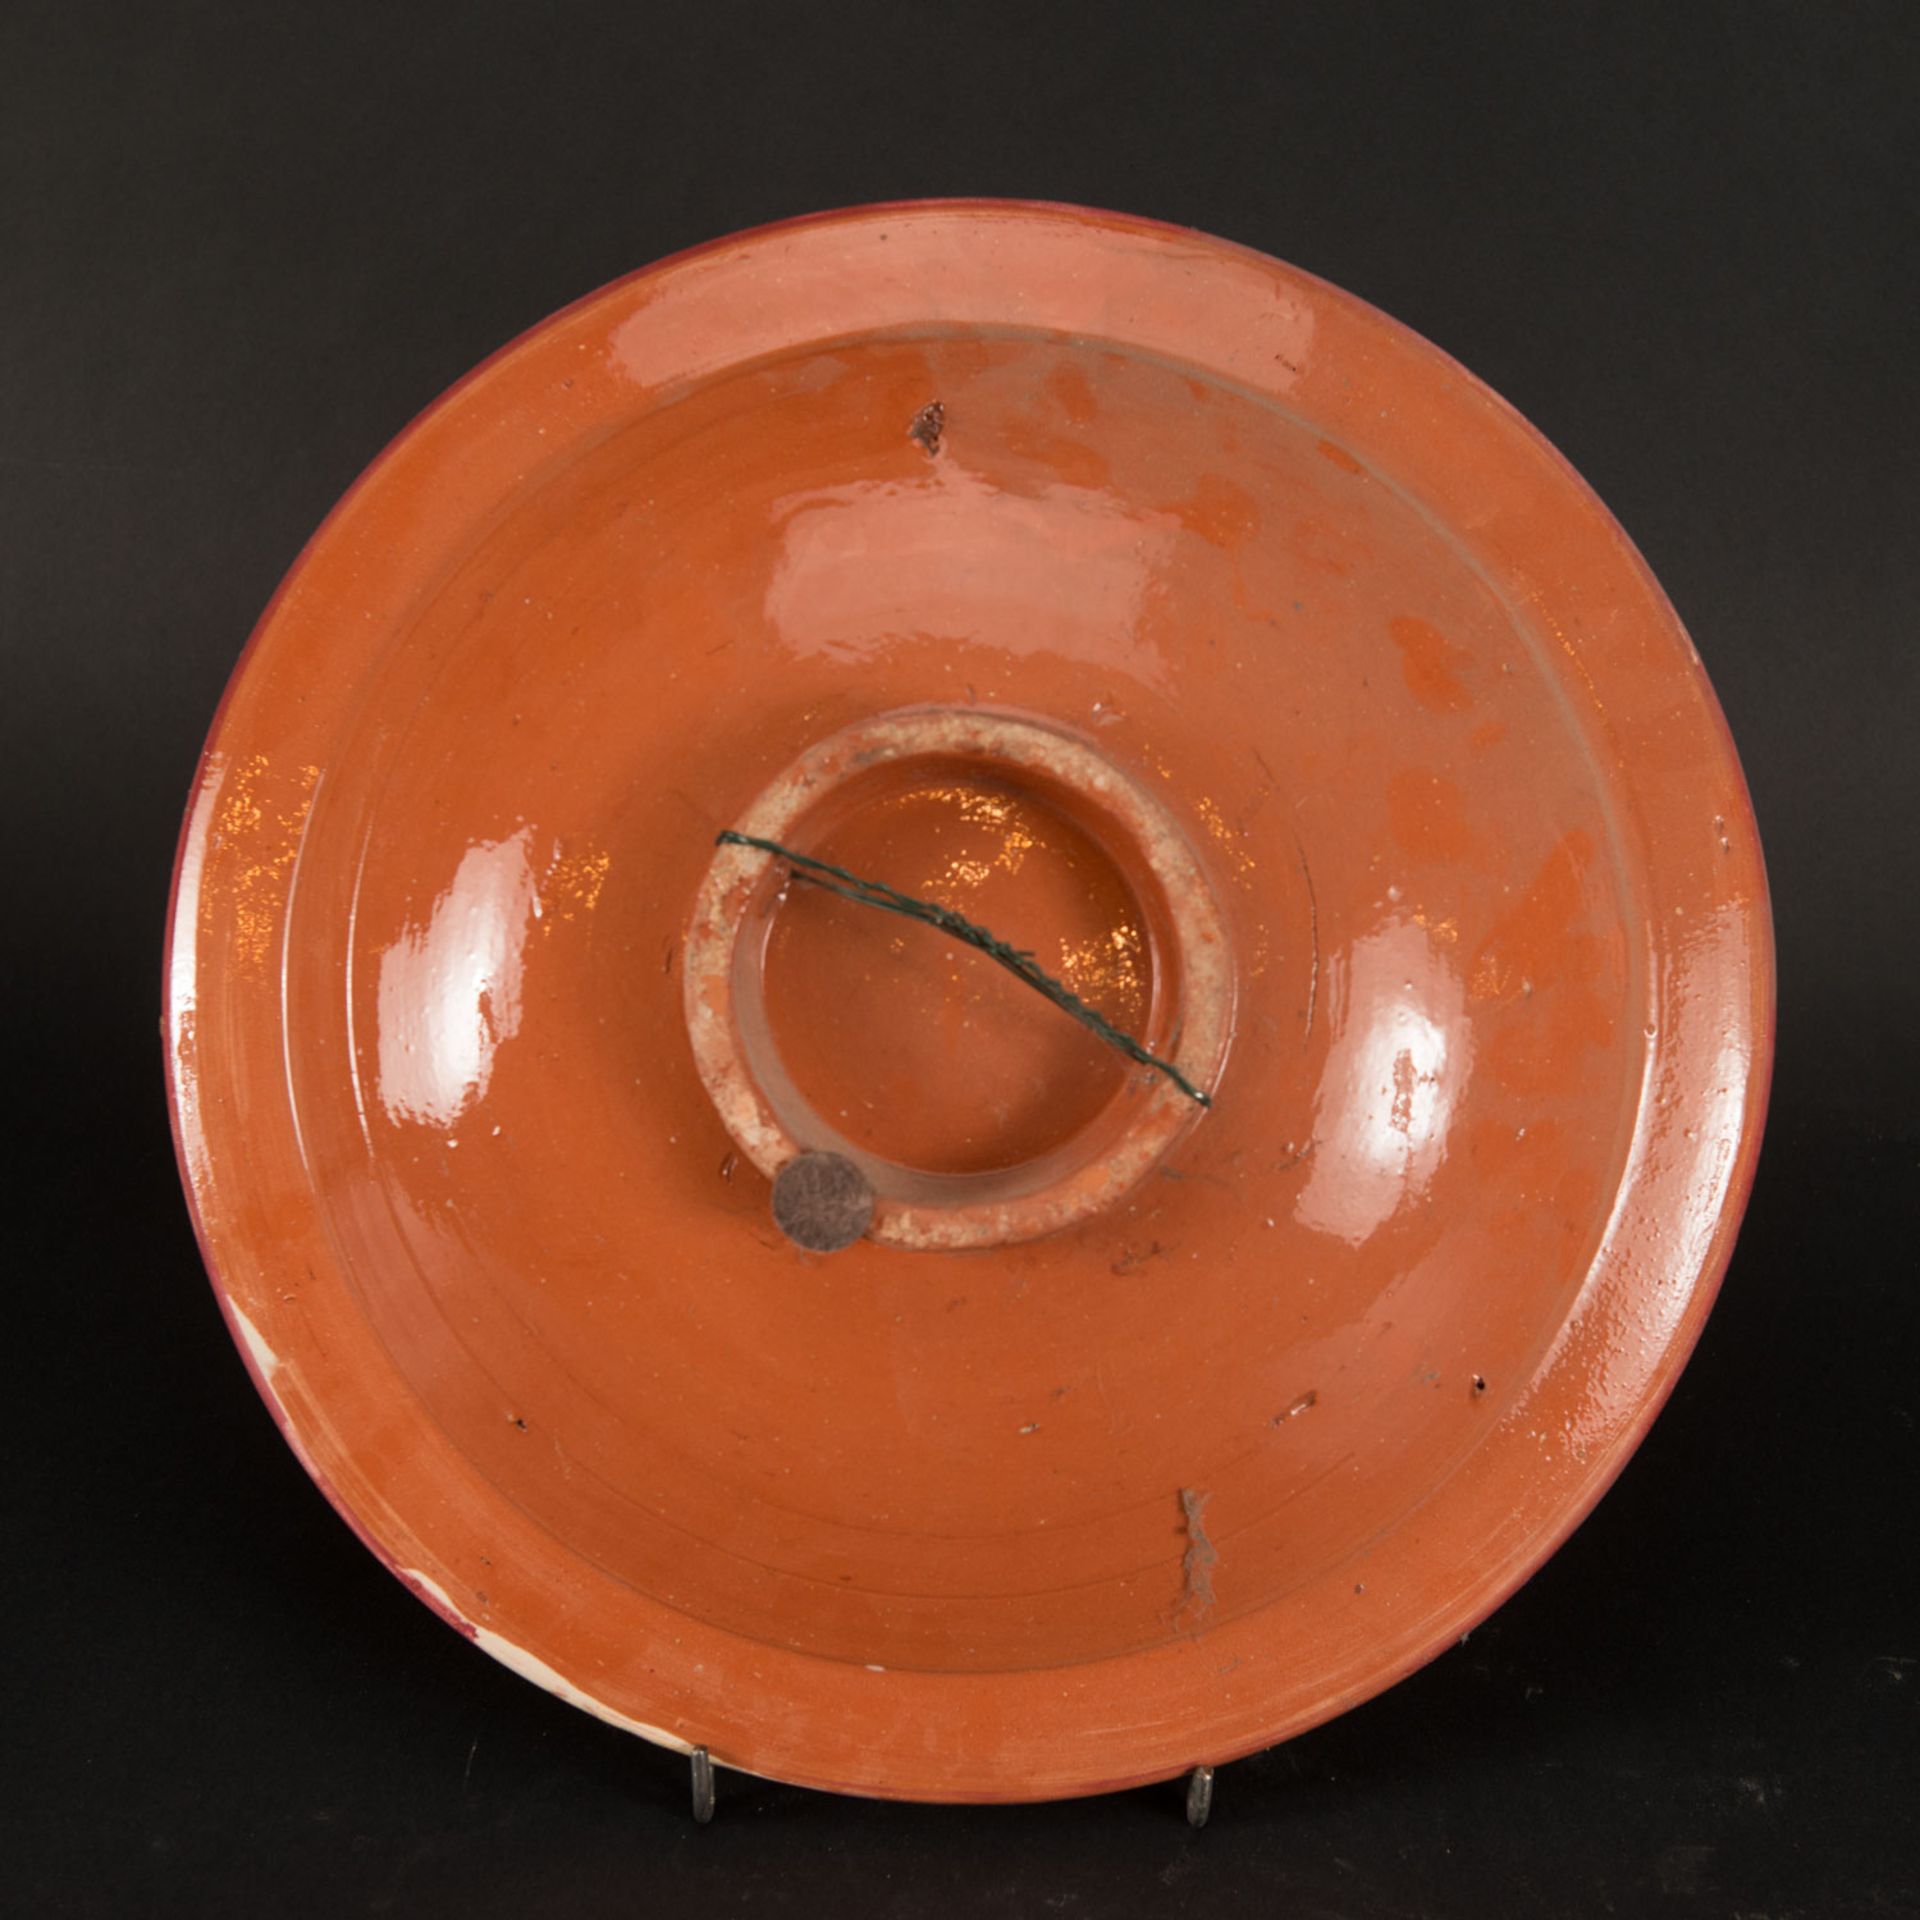 Three Fes Ceramic Plates - Image 3 of 3